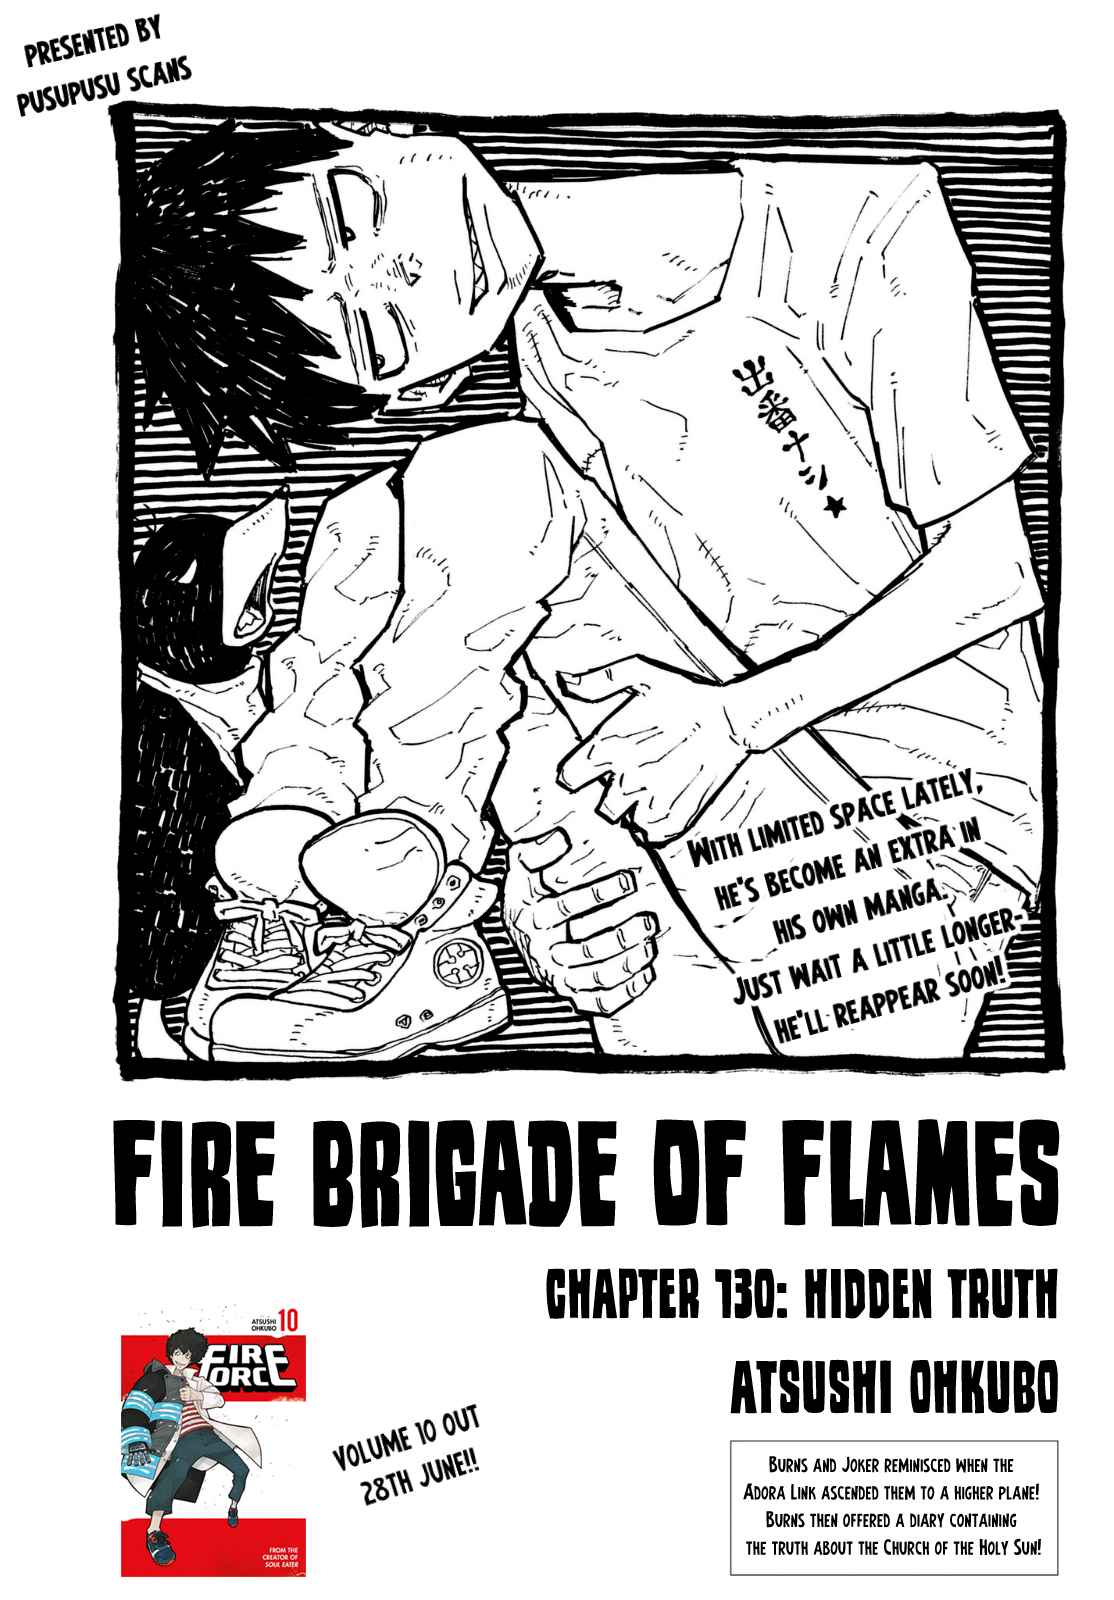 Fire Force Ch. 130 Hidden Truth